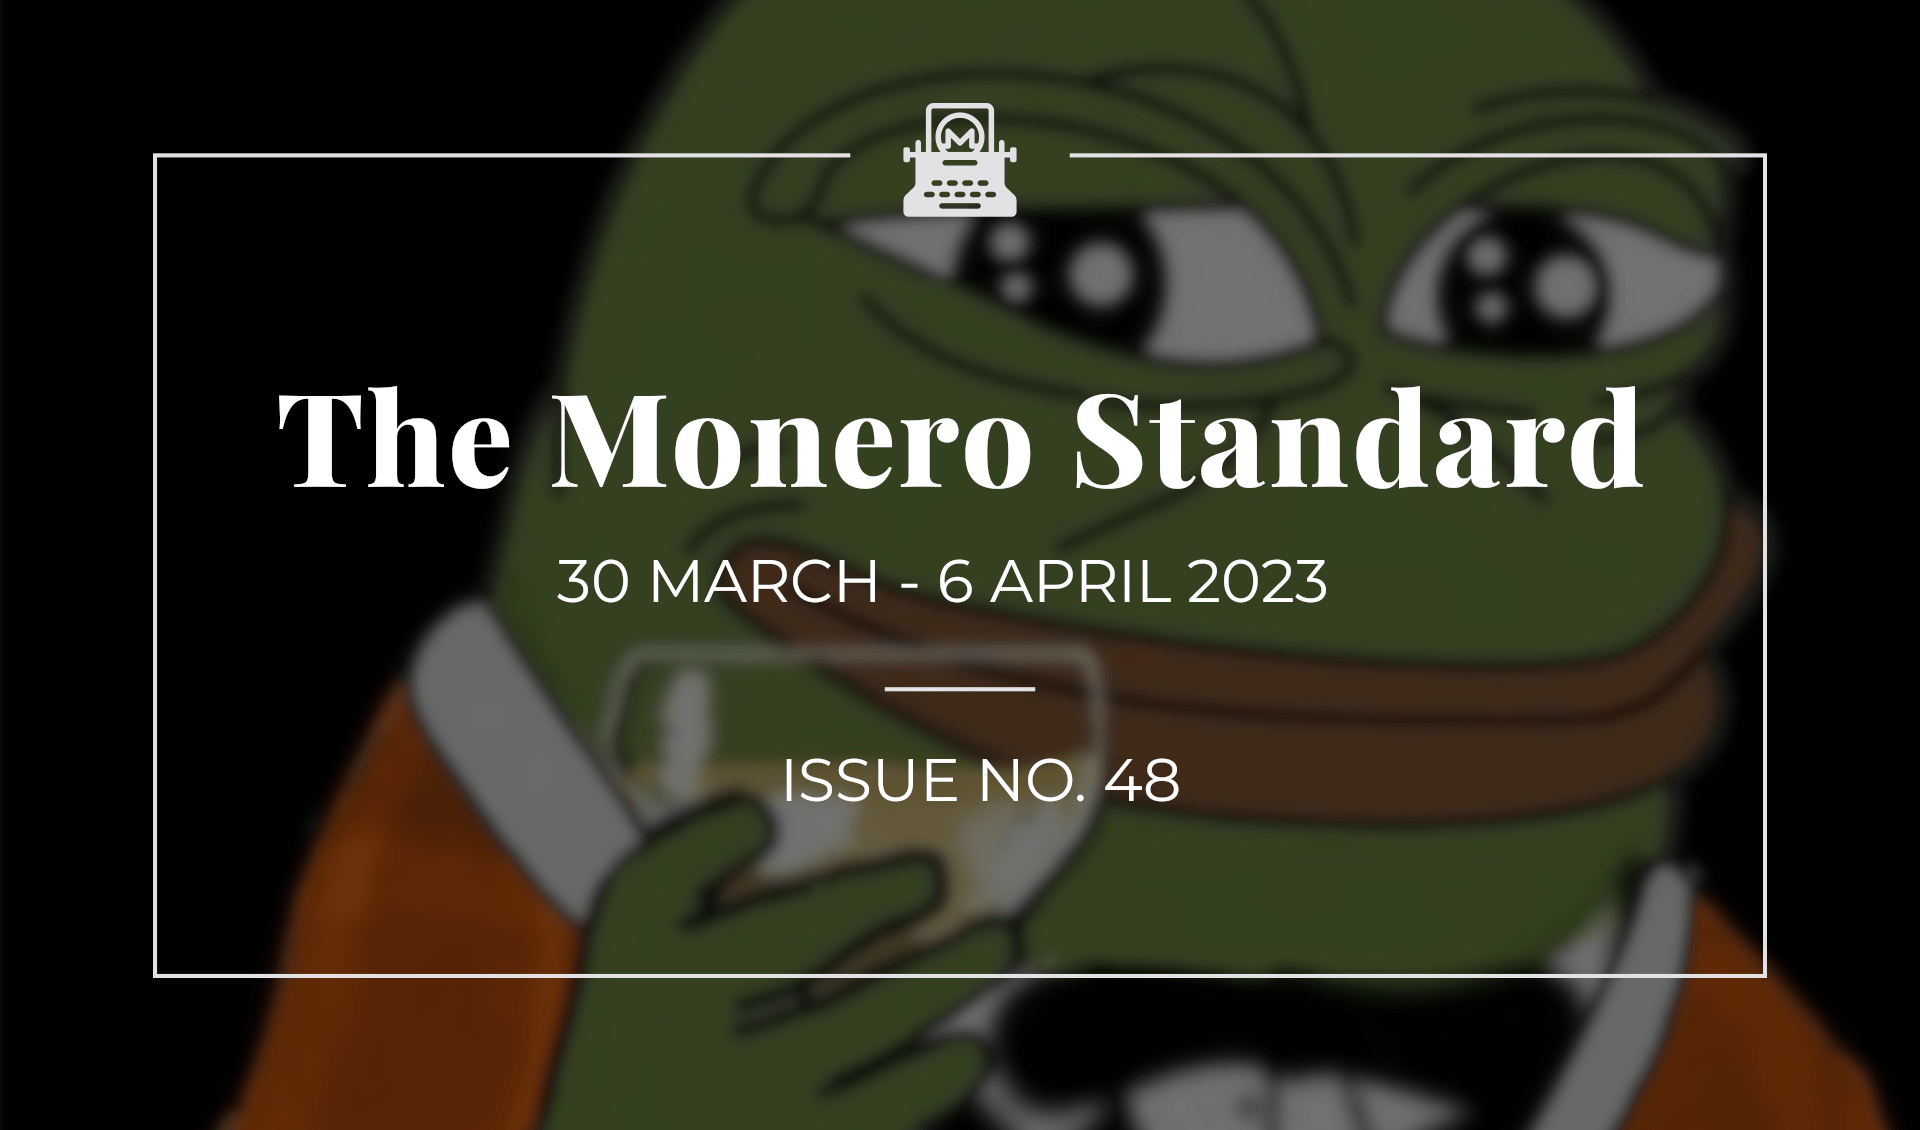 The Monero Standard #48: 30 March 2023 - 6 April 2023